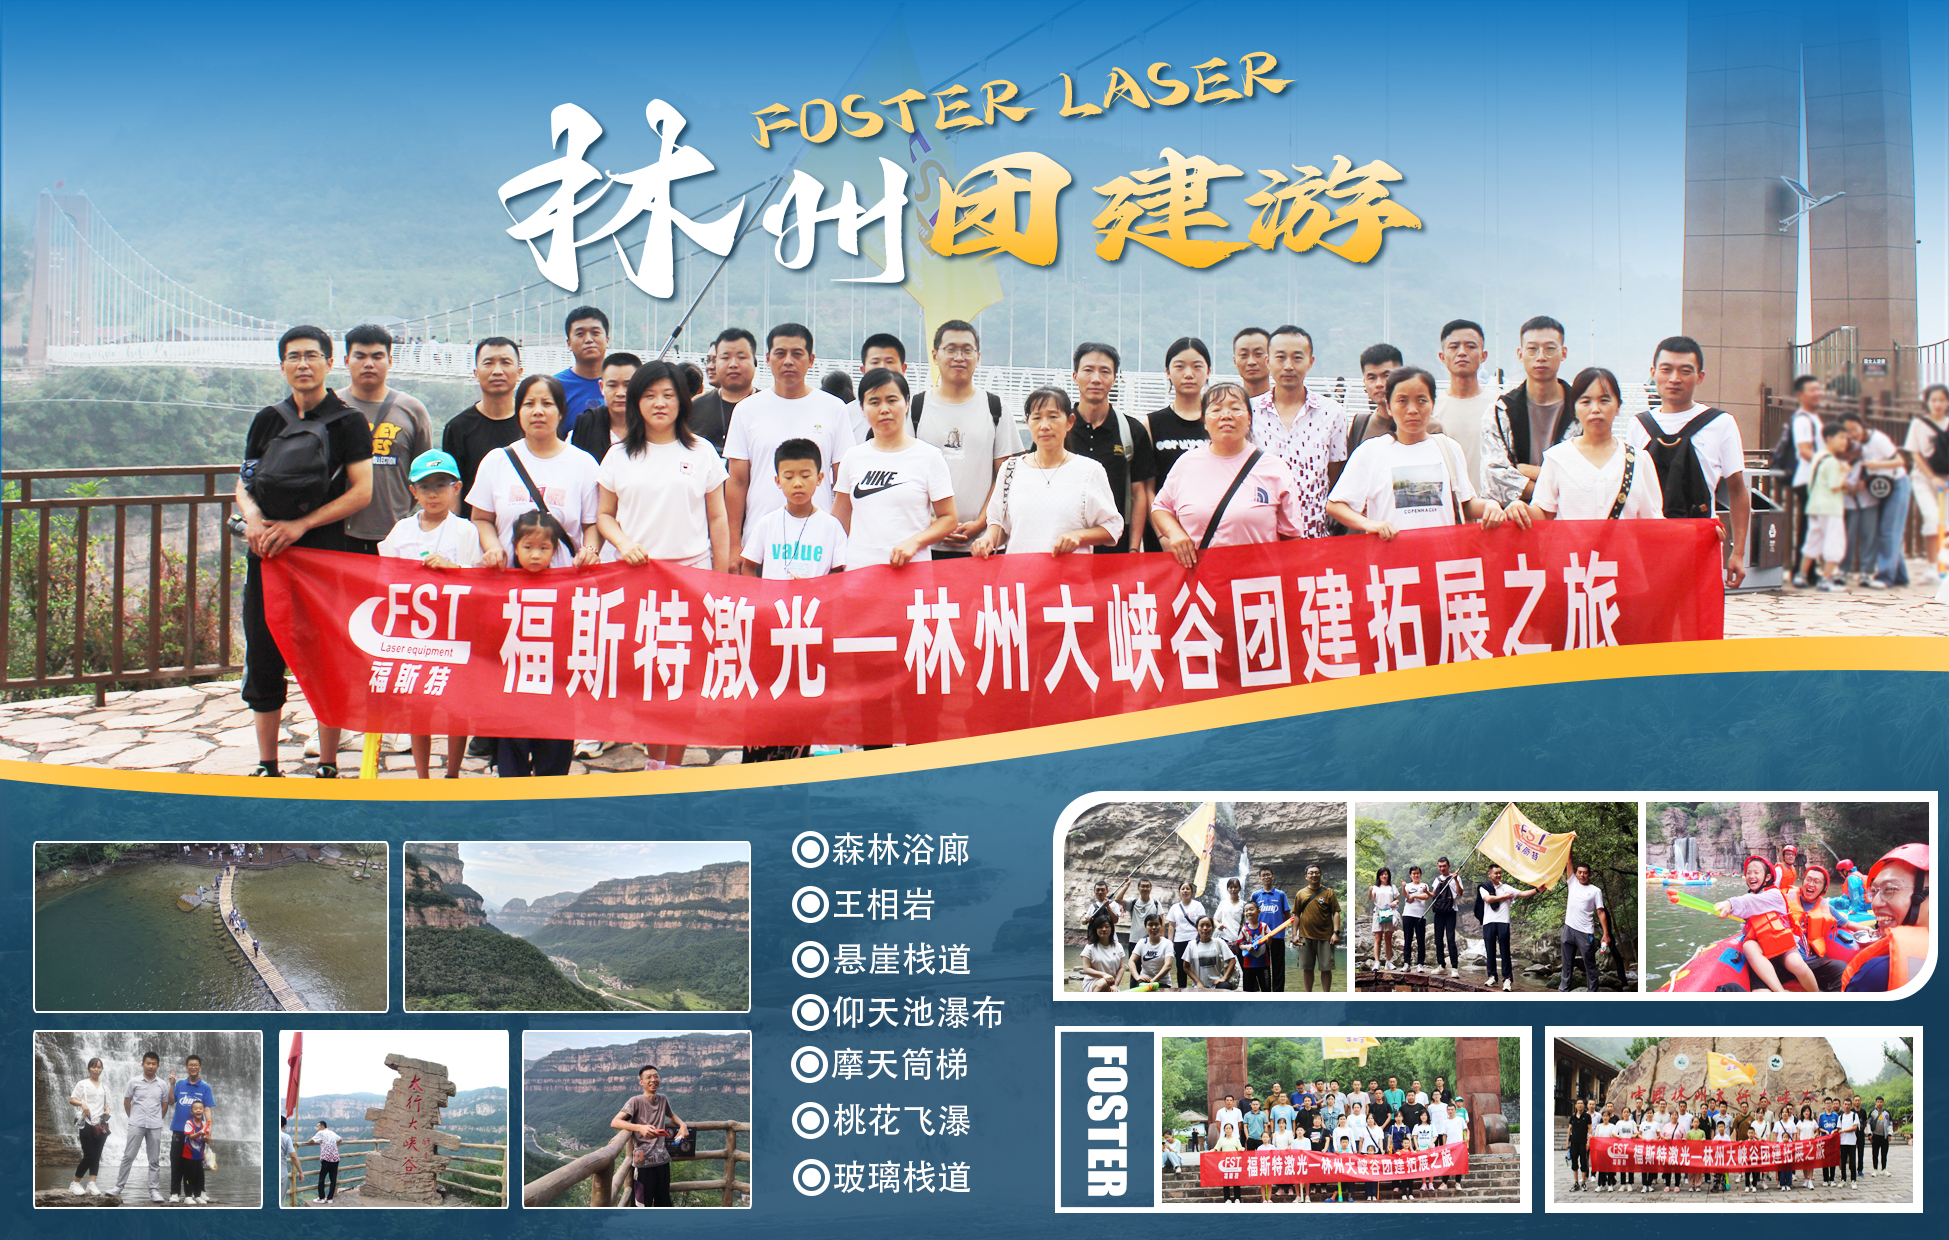 Foster Laser Technology Priority Company: Hindi malilimutang Pag-urong sa Pagbuo ng Koponan sa Henan Daxiagu